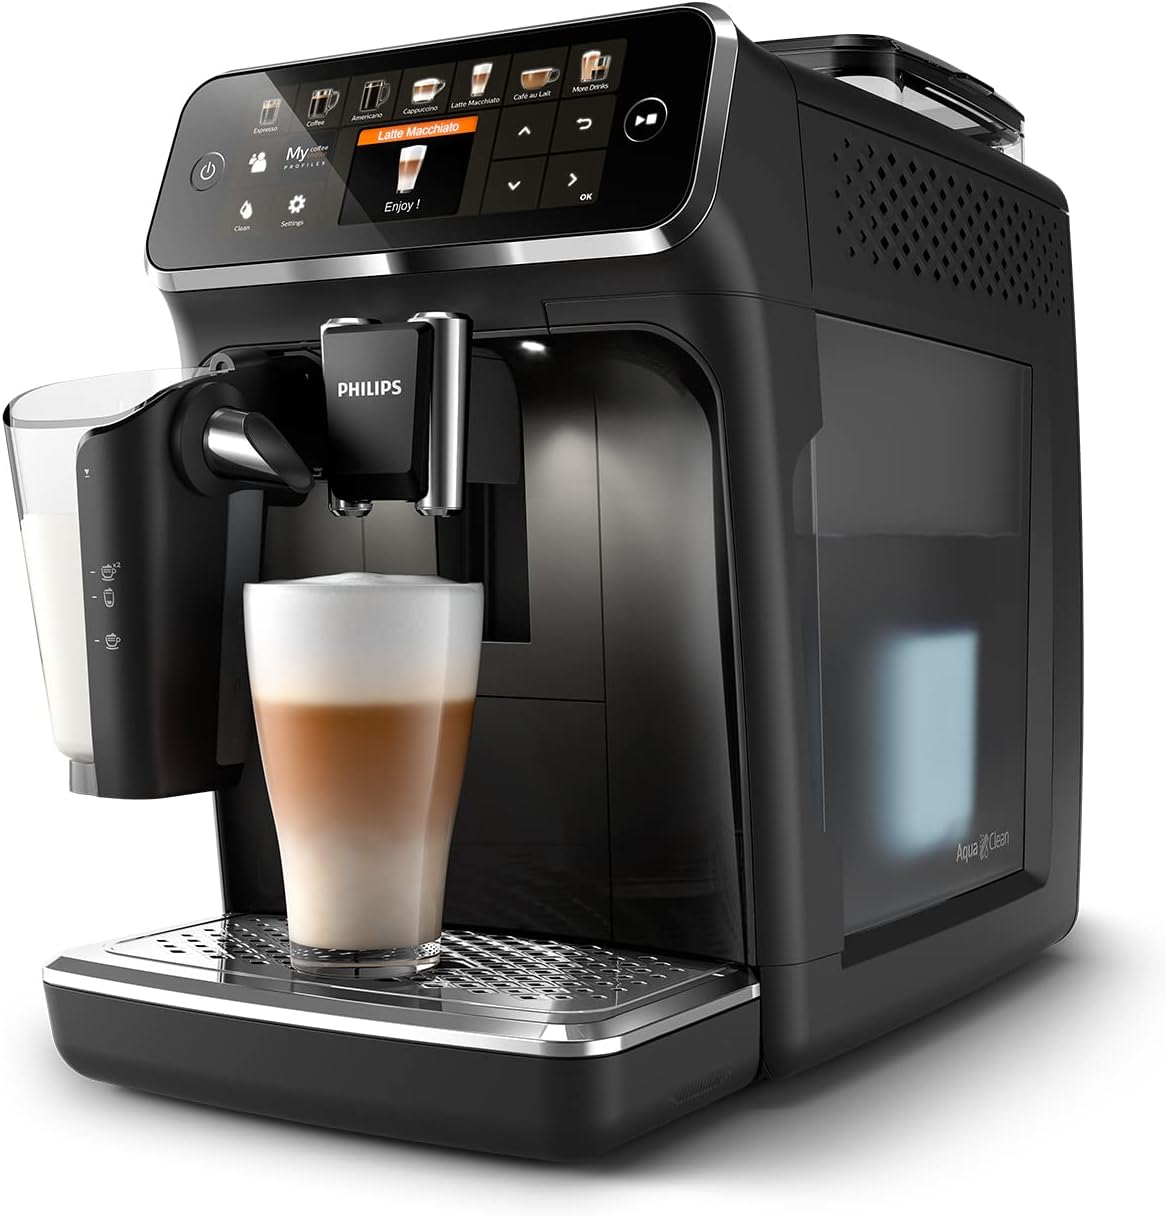 chollo Philips Serie 5400 Cafetera Superautomática - Sistema de Leche LatteGo, 12 Variedades de Café, Pantalla Intuitiva, 4 Perfiles de Usuario, Negro (EP5441/50)